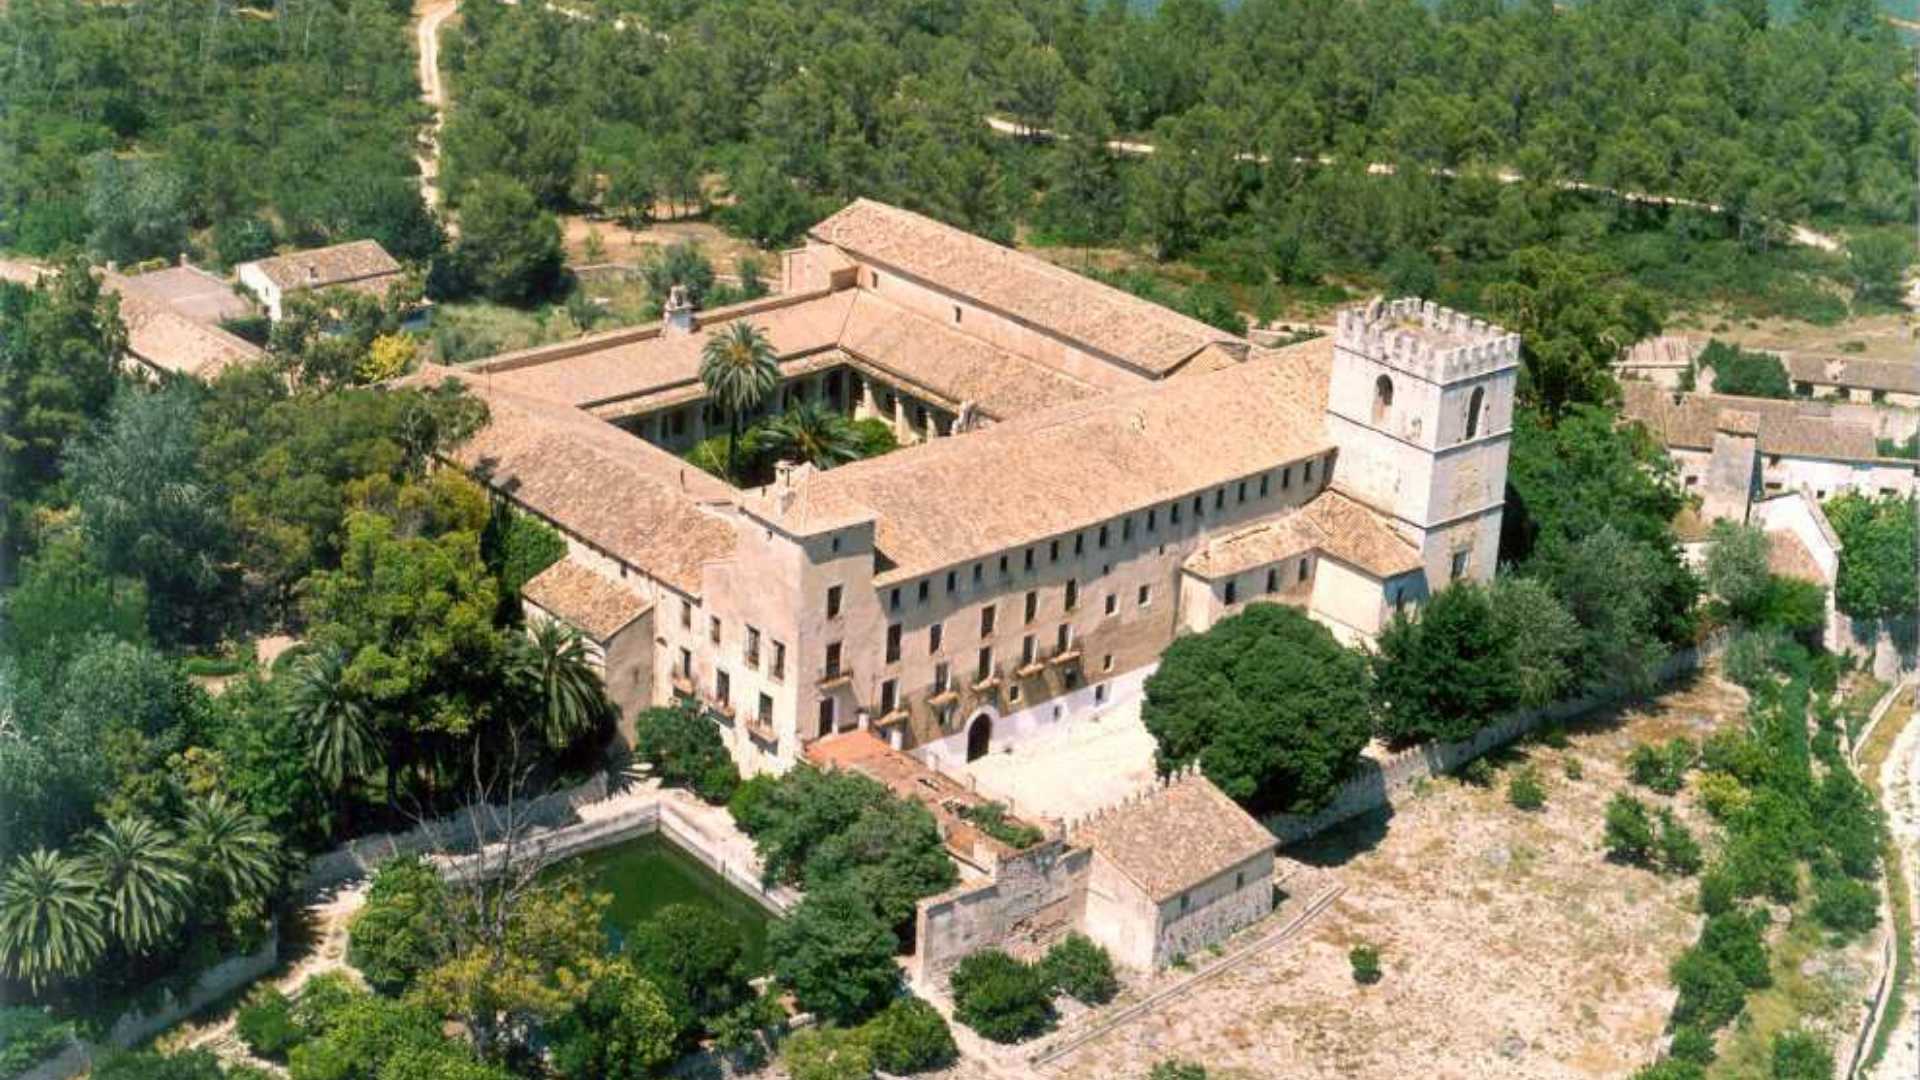 monasterio de sant jeroni de cotalba,
,